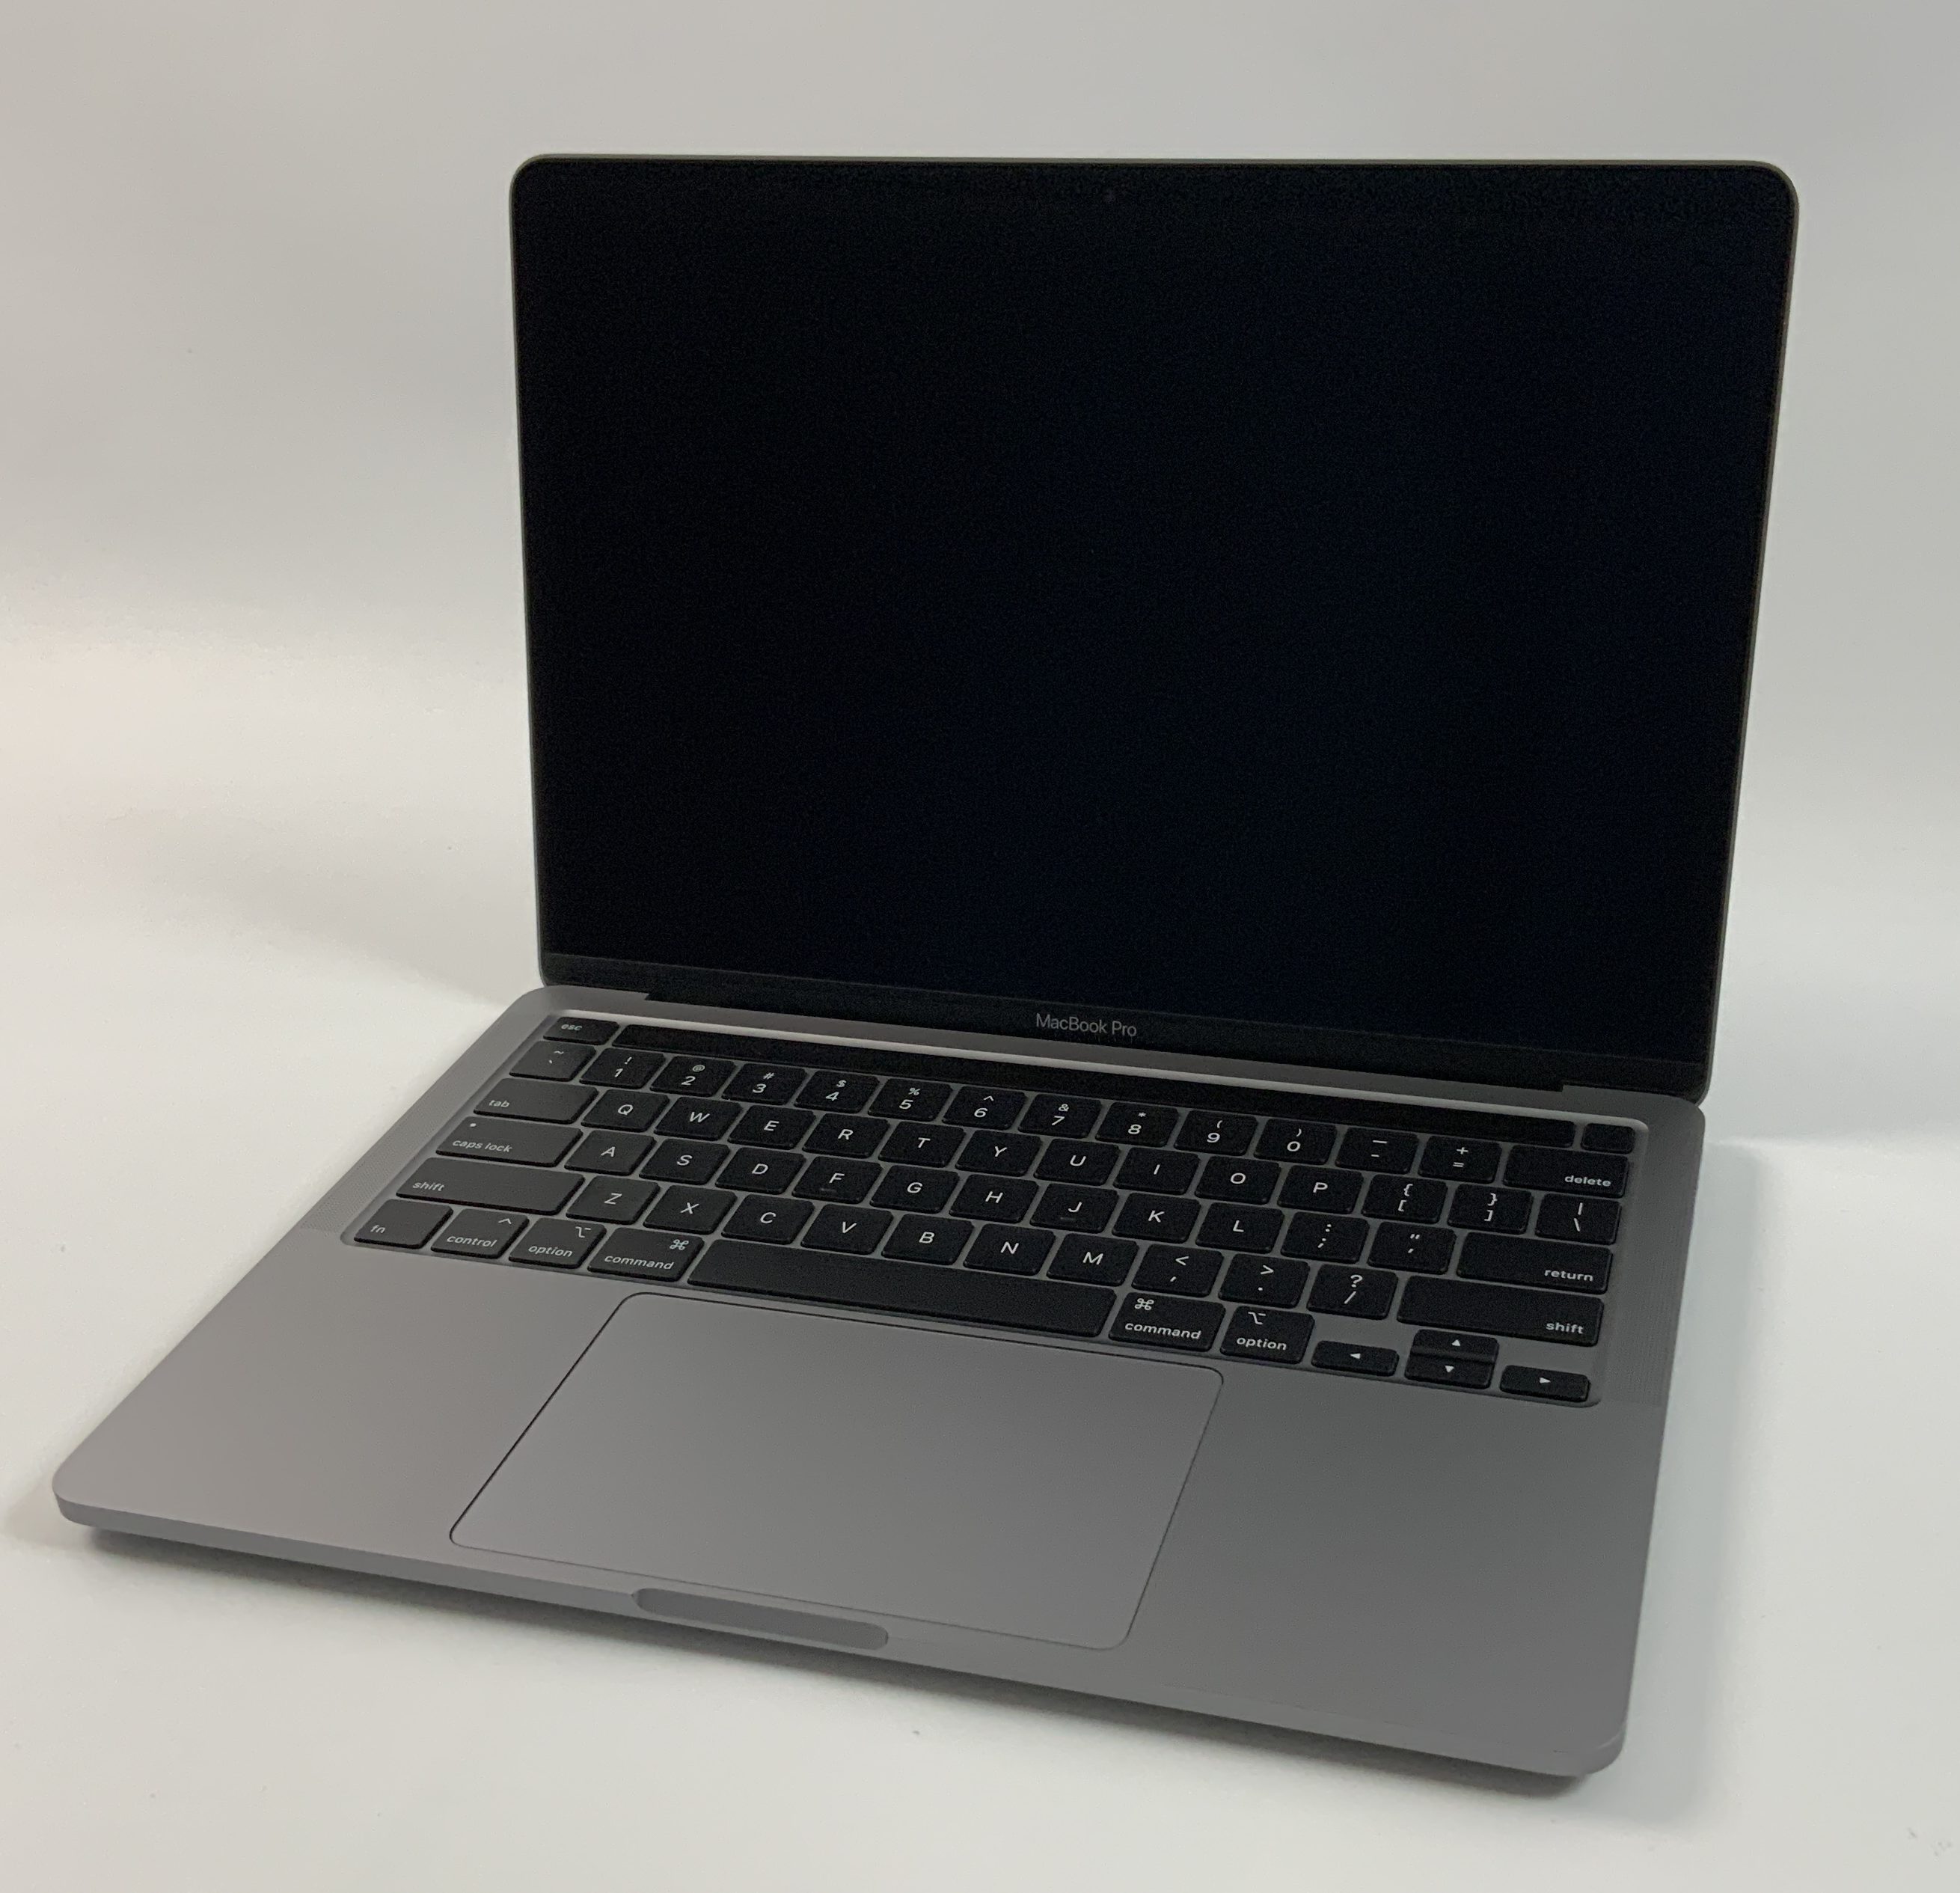 MacBook Pro 13" 4TBT Mid 2020 (Intel Quad-Core i5 2.0 GHz 16 GB RAM 512 GB SSD), Space Gray, Intel Quad-Core i5 2.0 GHz, 16 GB RAM, 512 GB SSD, Afbeelding 1